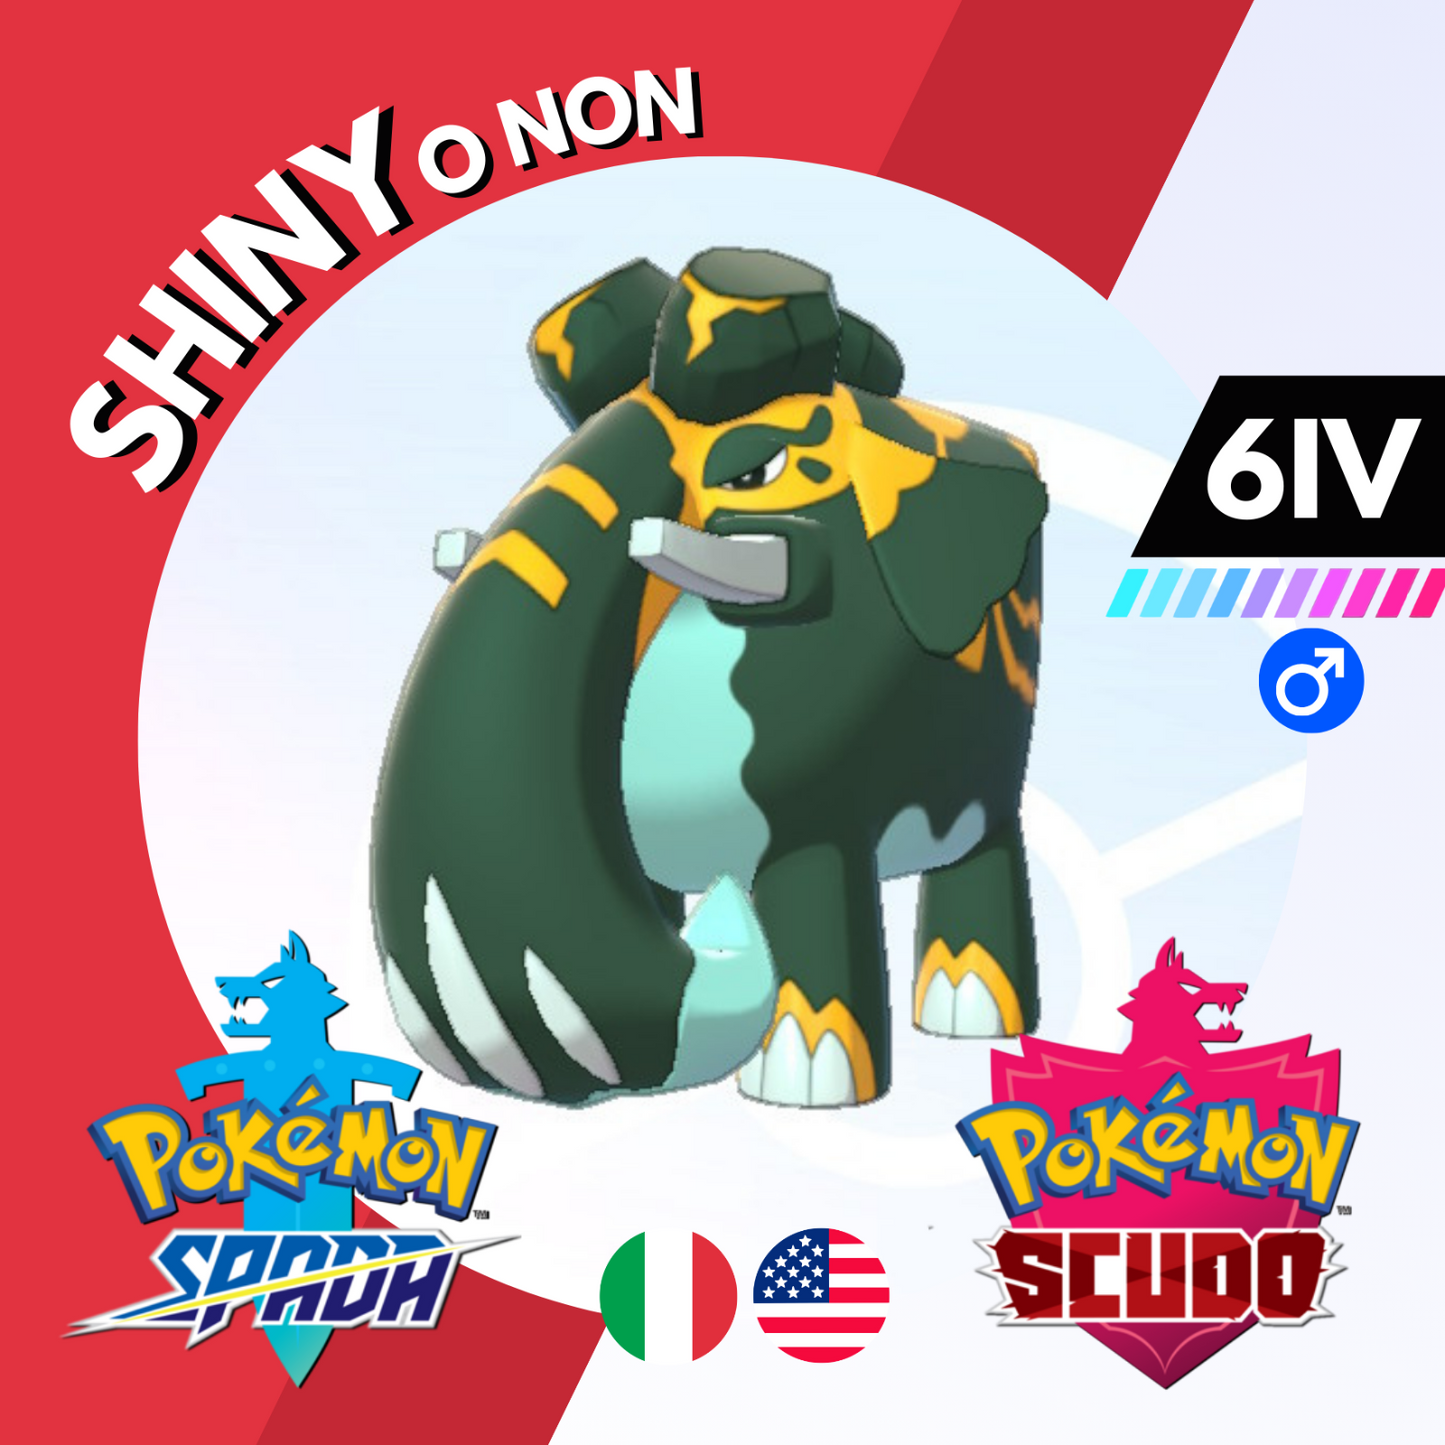 Copperajah Shiny o Non 6 IV Competitivo Legit Pokemon Spada Scudo Sword Shield